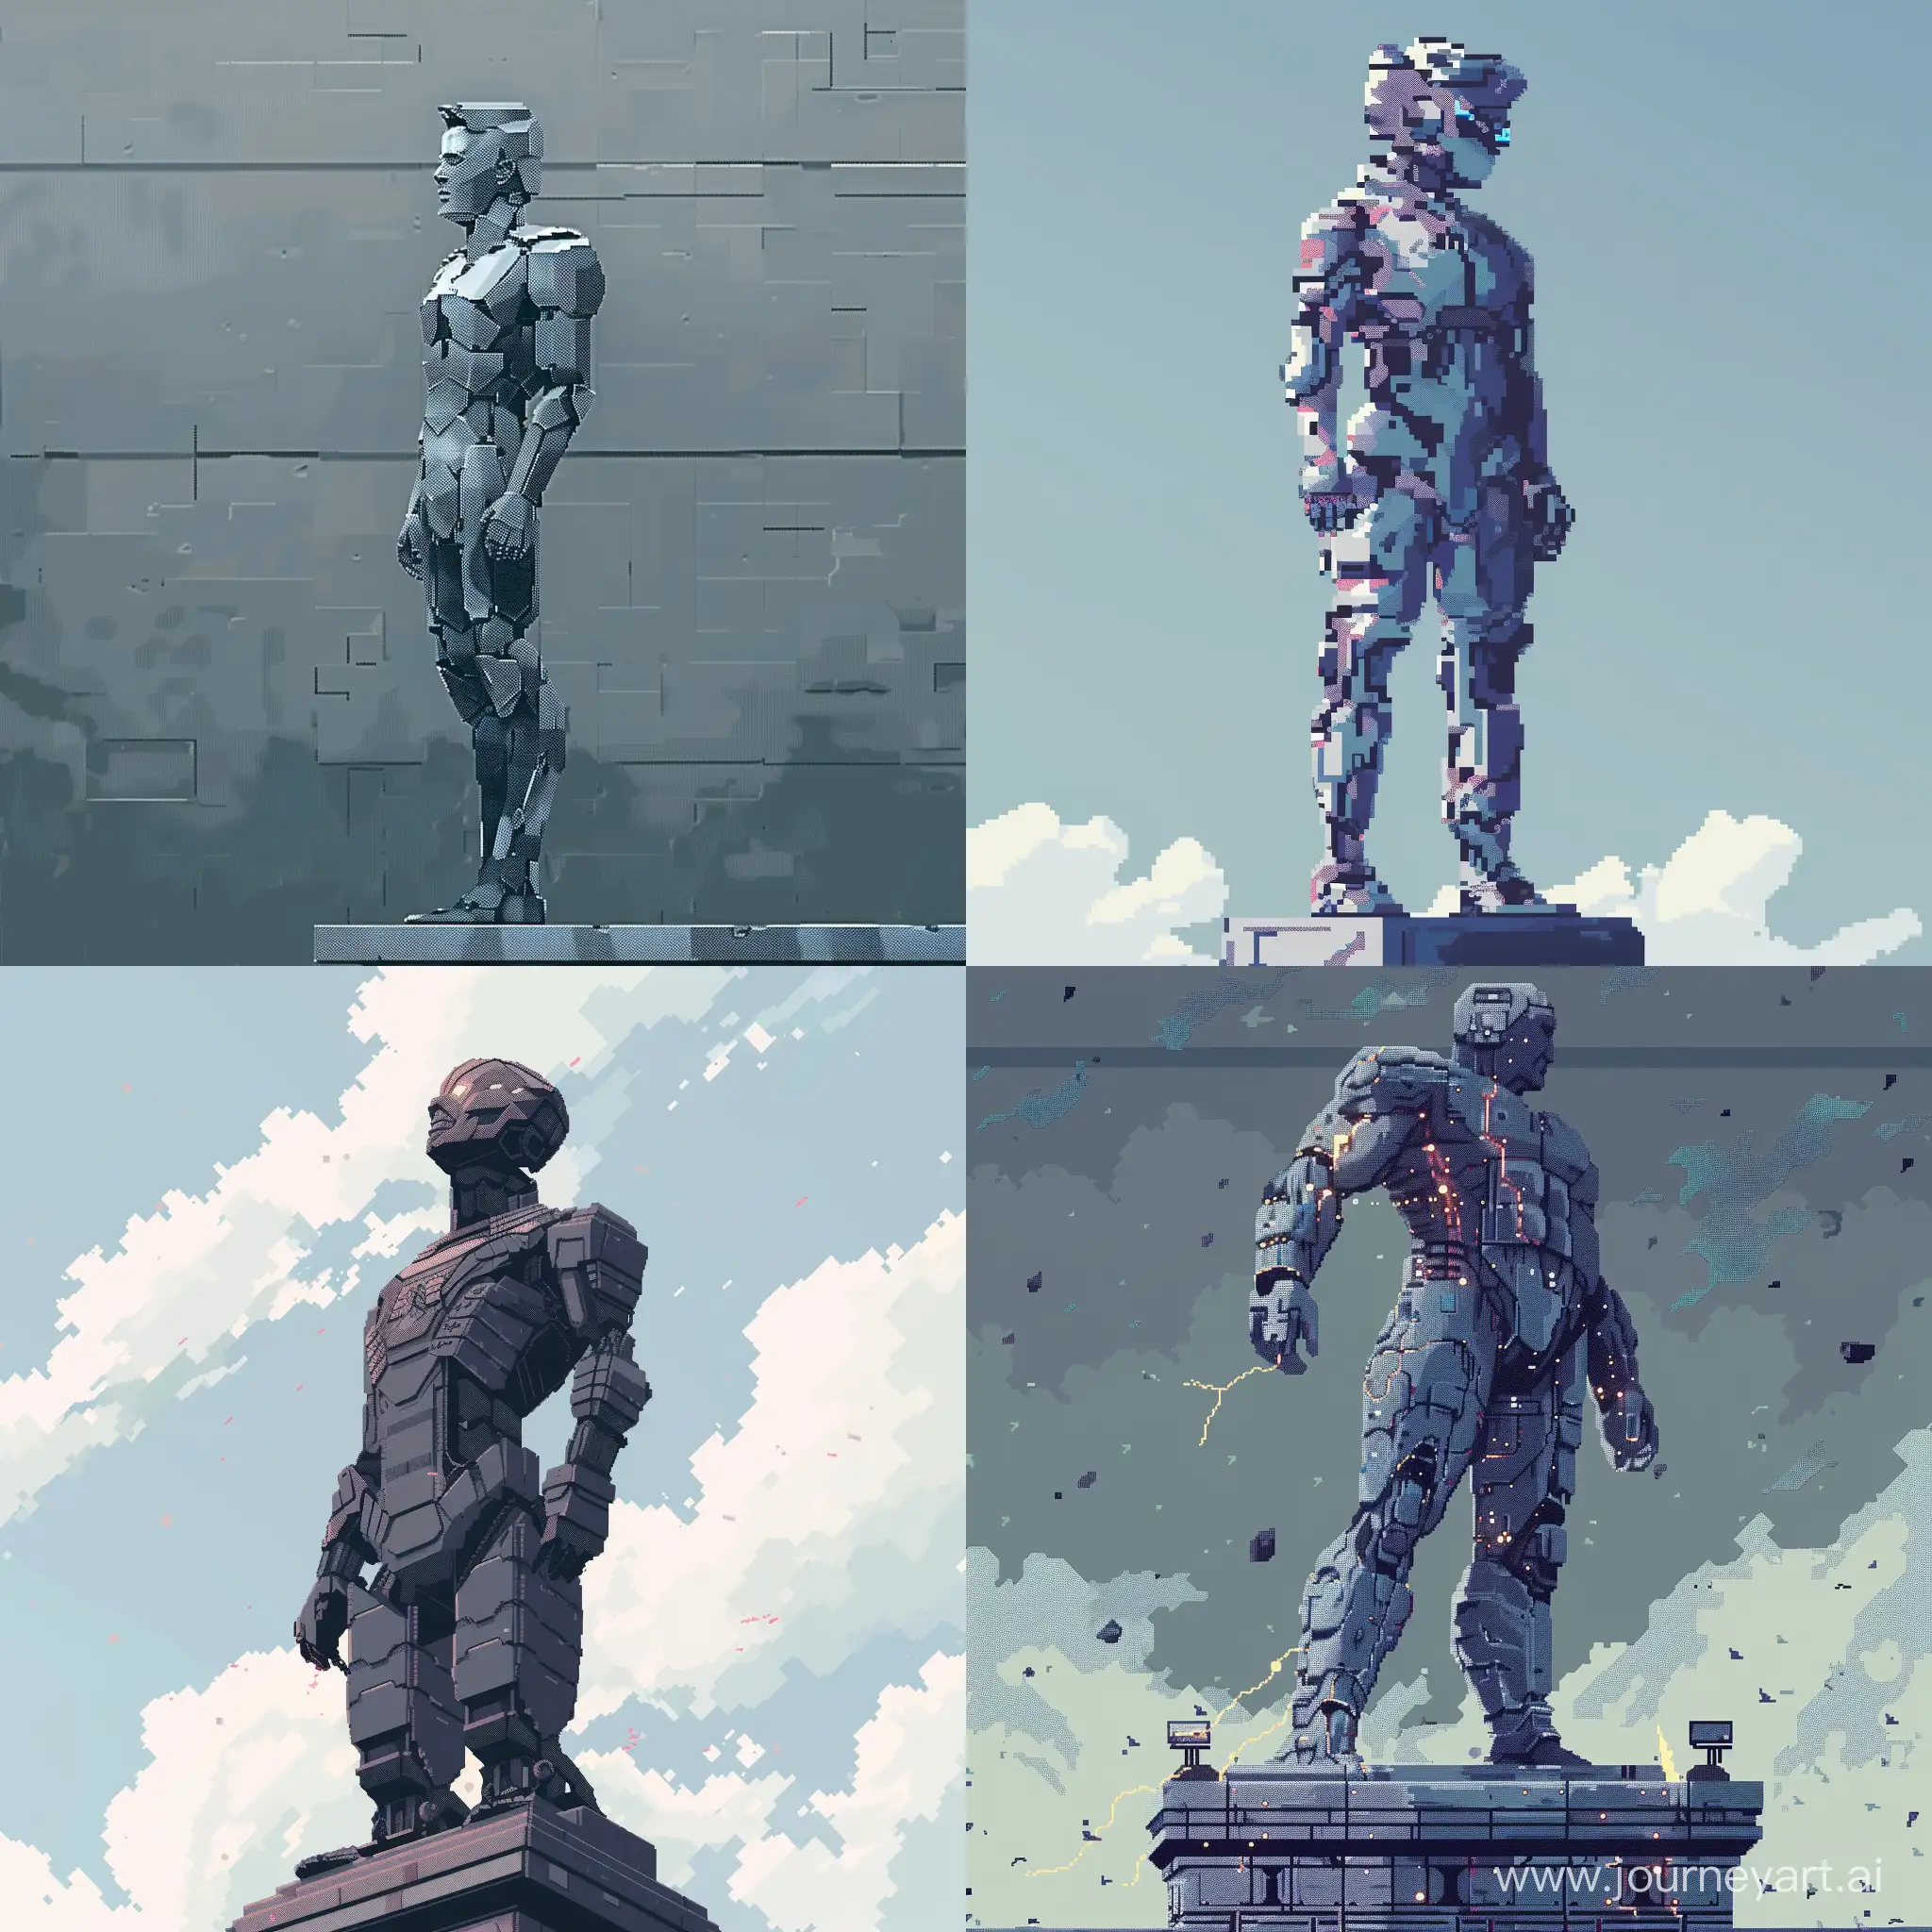 Futuristic-Pixel-Art-Brutalist-Statue-of-a-Man-in-Futuristic-Outfit